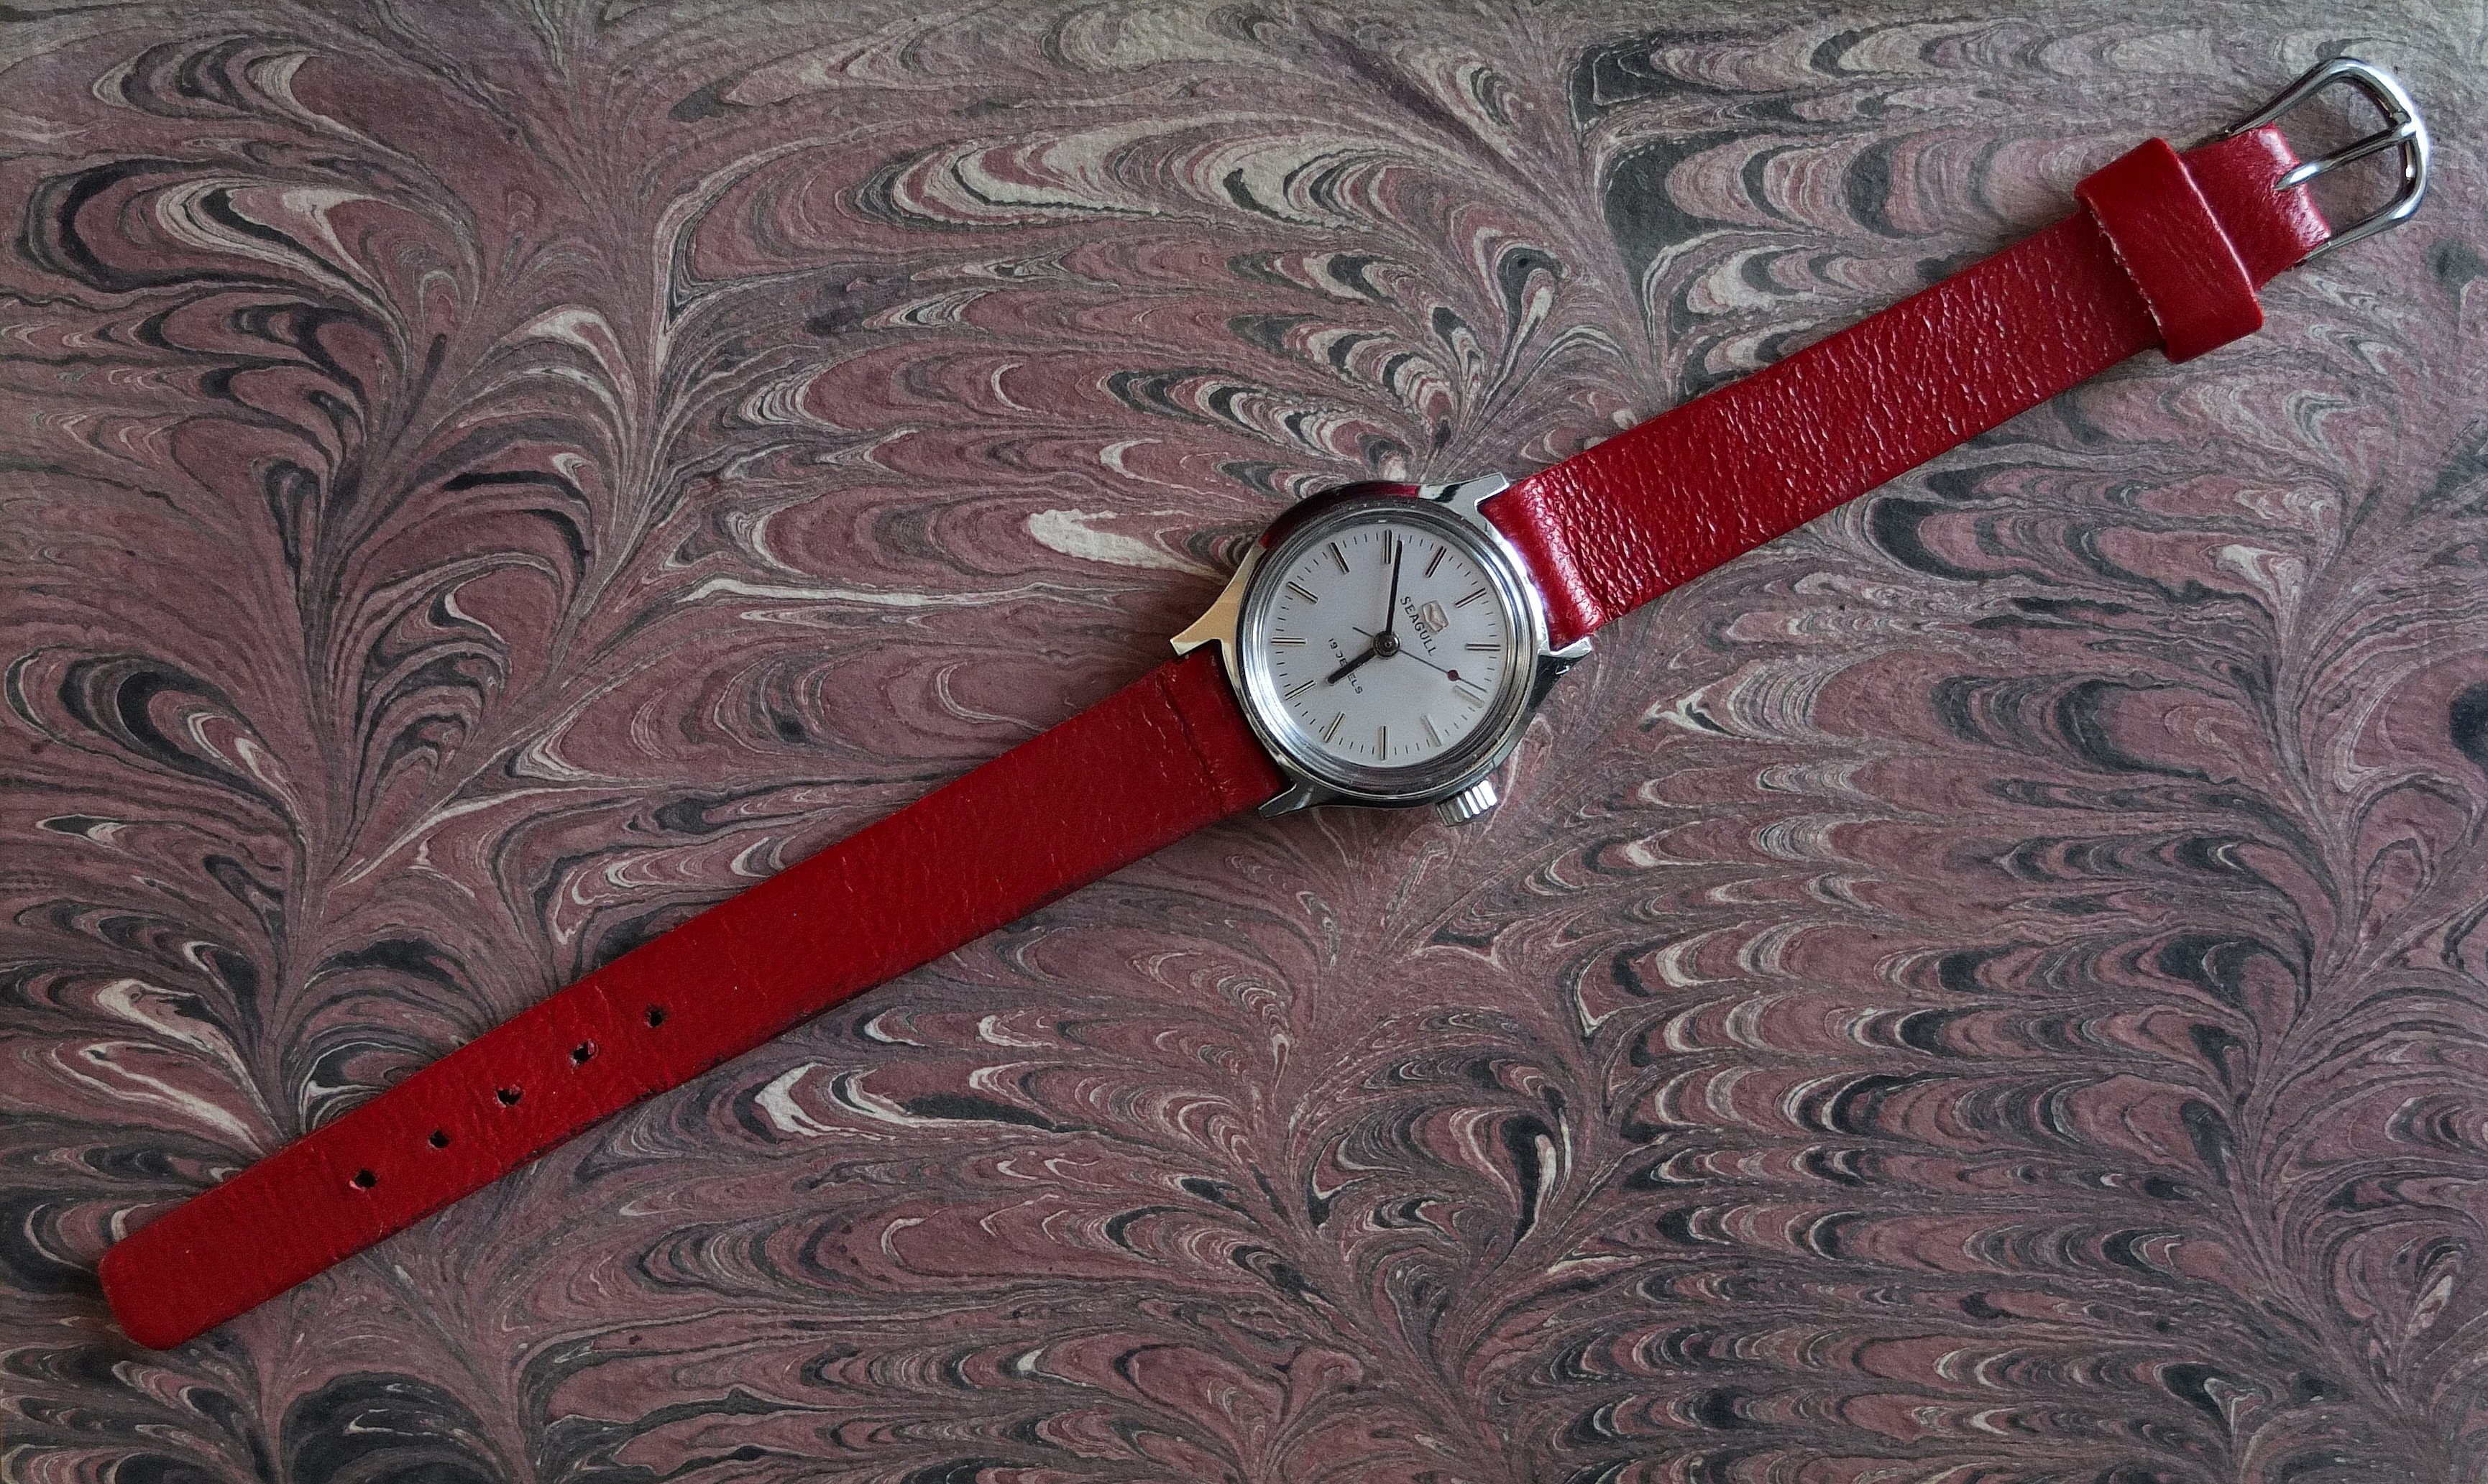 Thuis door horlogebandjes - Algemene Horlogepraat - Horlogeforum.nl - forum voor liefhebbers van horloges